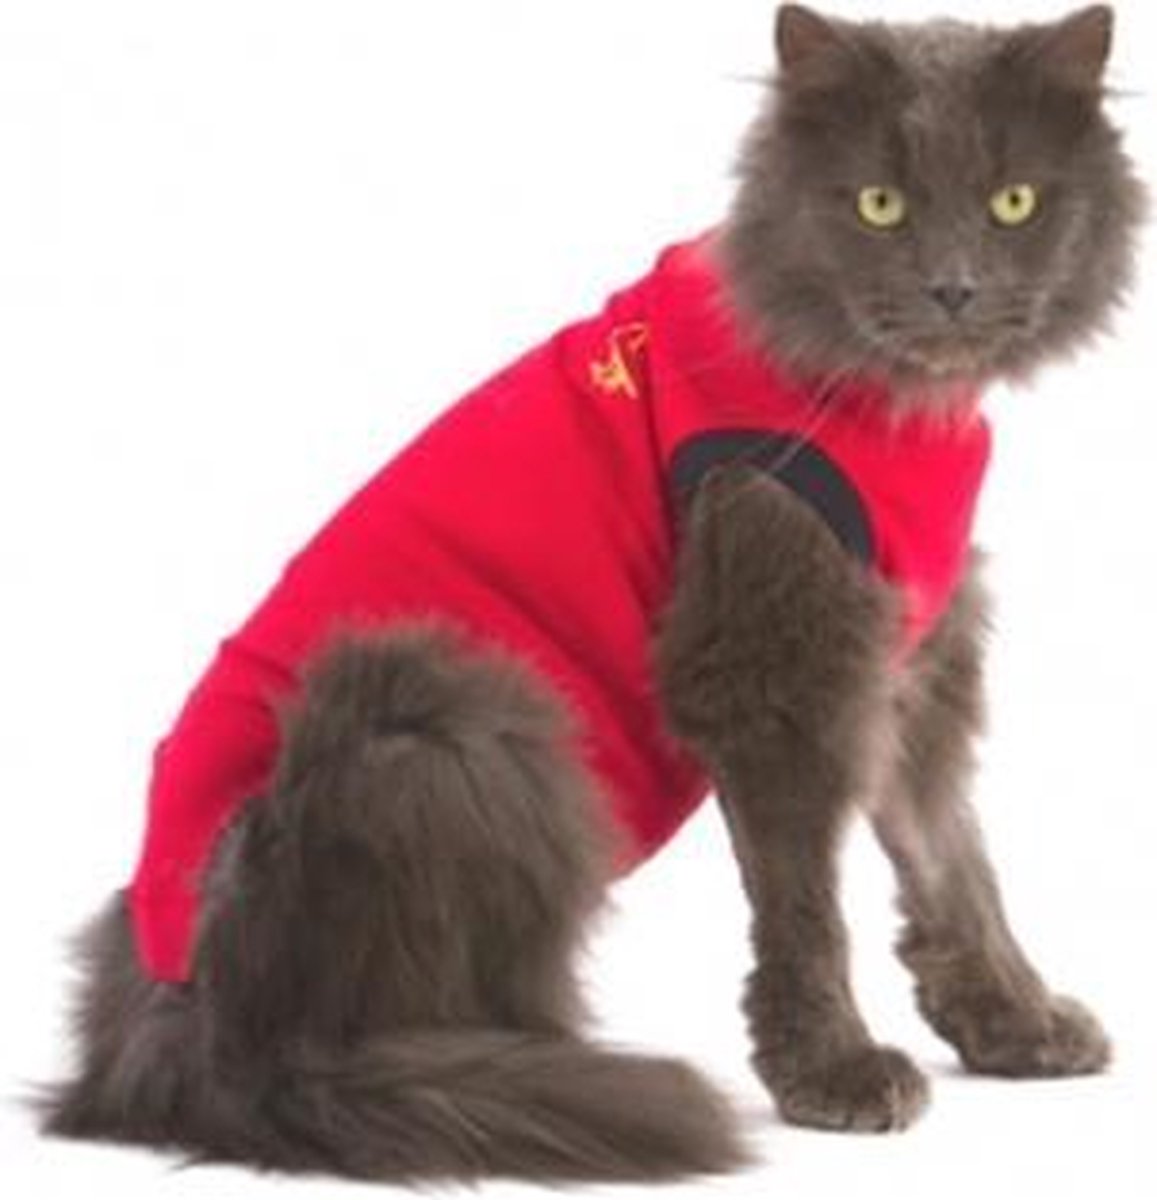 Medical Pet Shirt Kat - Rood - XS - Medical Pet Shirt